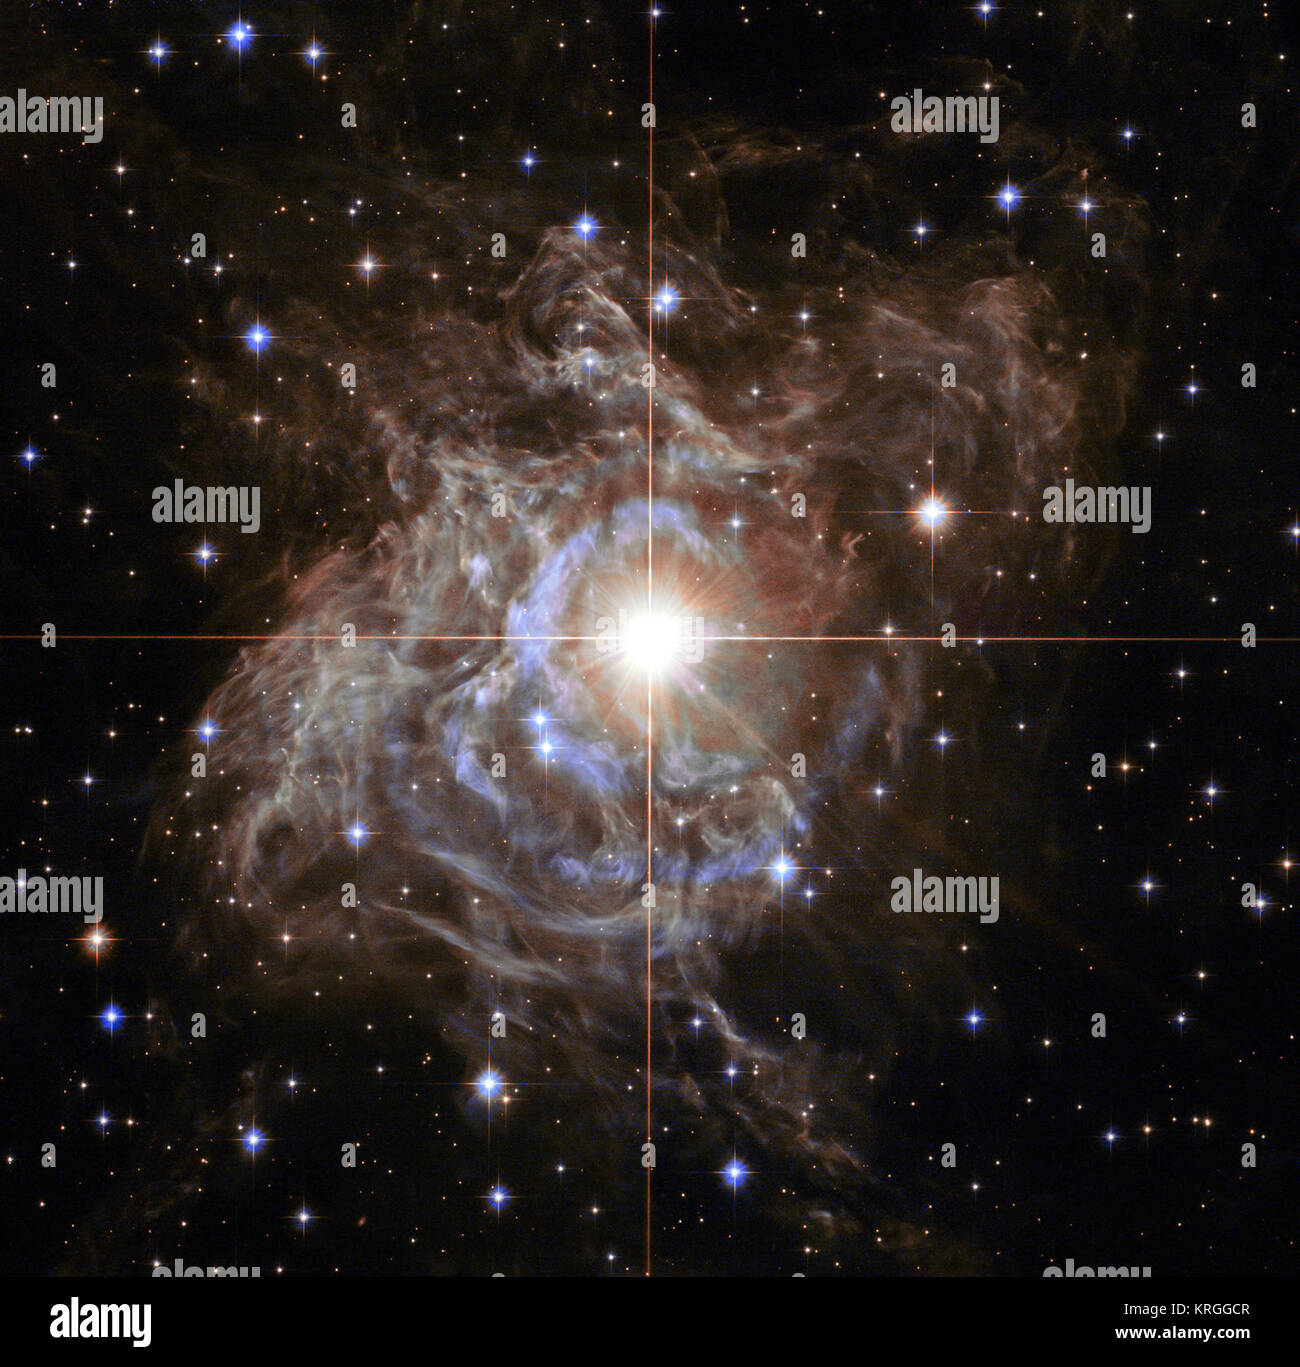 Cette image de Hubble montre RS Puppis, un type de variable star connue comme une variable Céphéide. Comme les étoiles variables Céphéides ont rendez-vous, les périodes relativement longues - RS Puppis, par exemple, varie en fonction de la luminosité de près d'un facteur de cinq tous les 40 jours. RS Puppis est inhabituel ; cette variable star est entourée par d'épais nuages de poussière sombre, permettant à un phénomène connu comme un écho de la lumière d'être montré avec une clarté exceptionnelle. Ces observations de Hubble montrent l'objet éthéré ancrées dans son environnement poussiéreux, défini dans un ciel noir rempli de galaxies d'arrière-plan. Heic1323un -1243686232 Banque D'Images